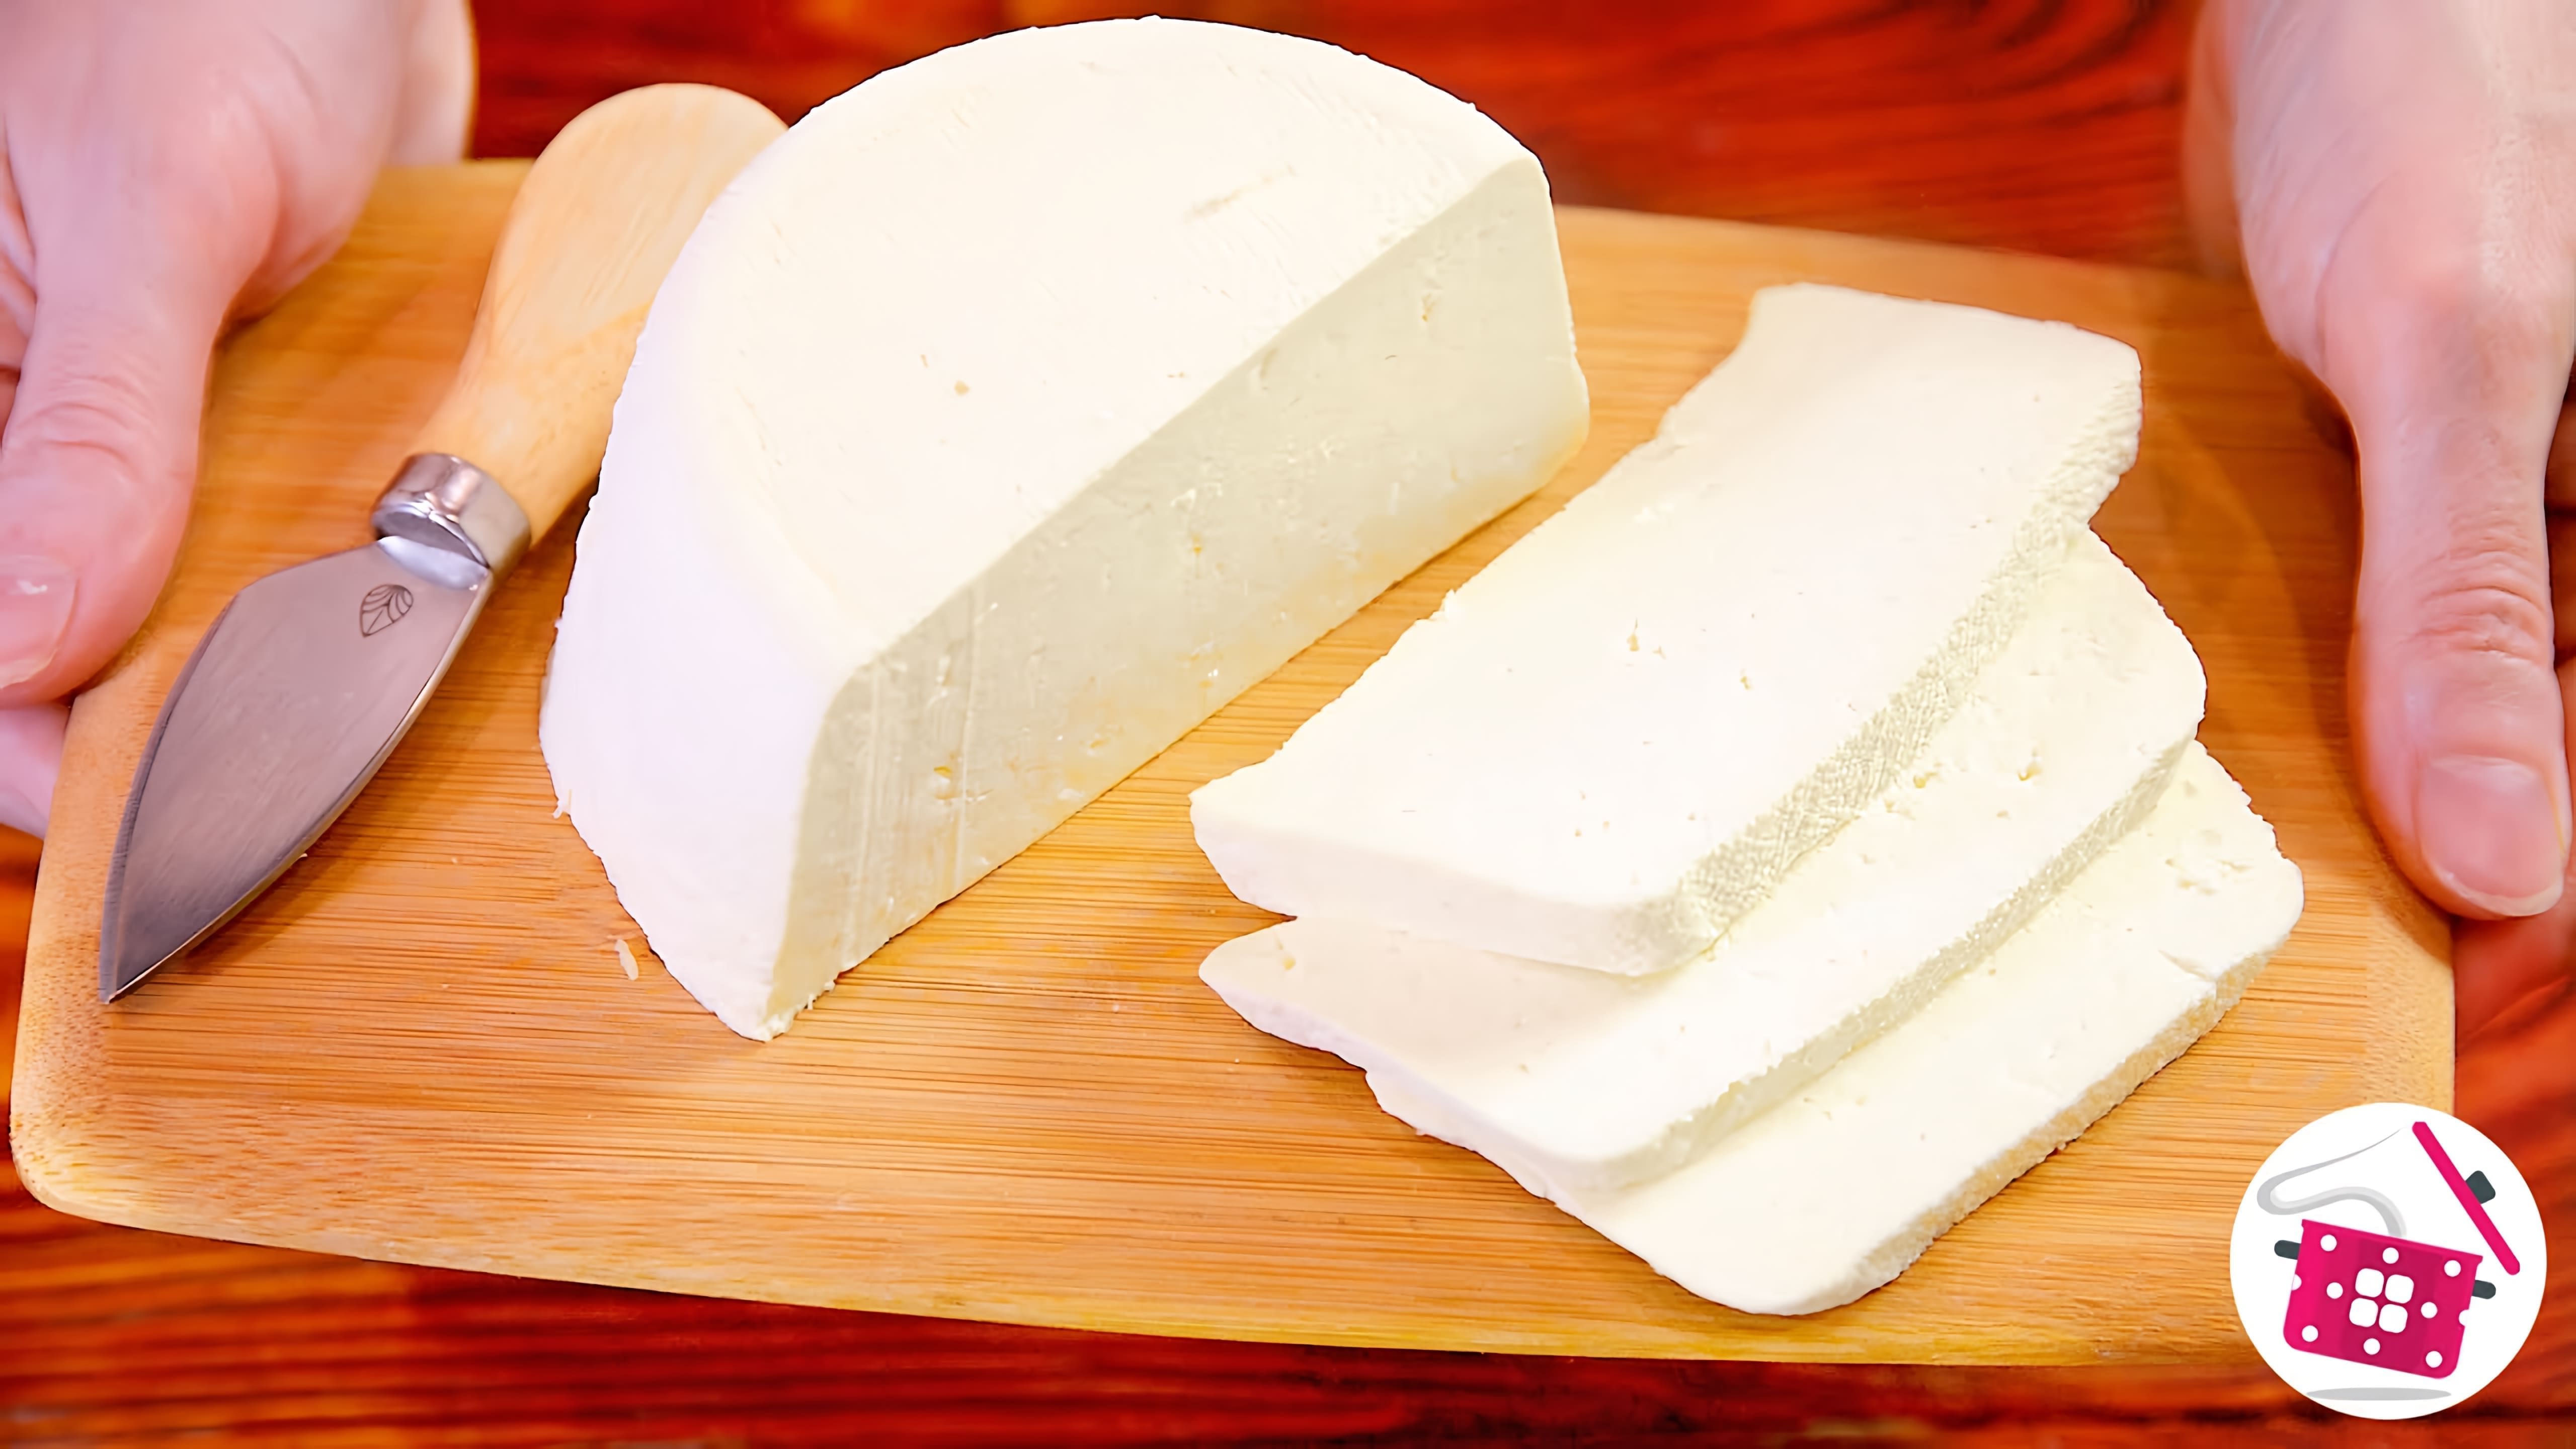 Видео рецепт домашнего сыра, который можно приготовить всего из 3 ингредиентов - молока, соли и яиц/сметаны за примерно 10 минут